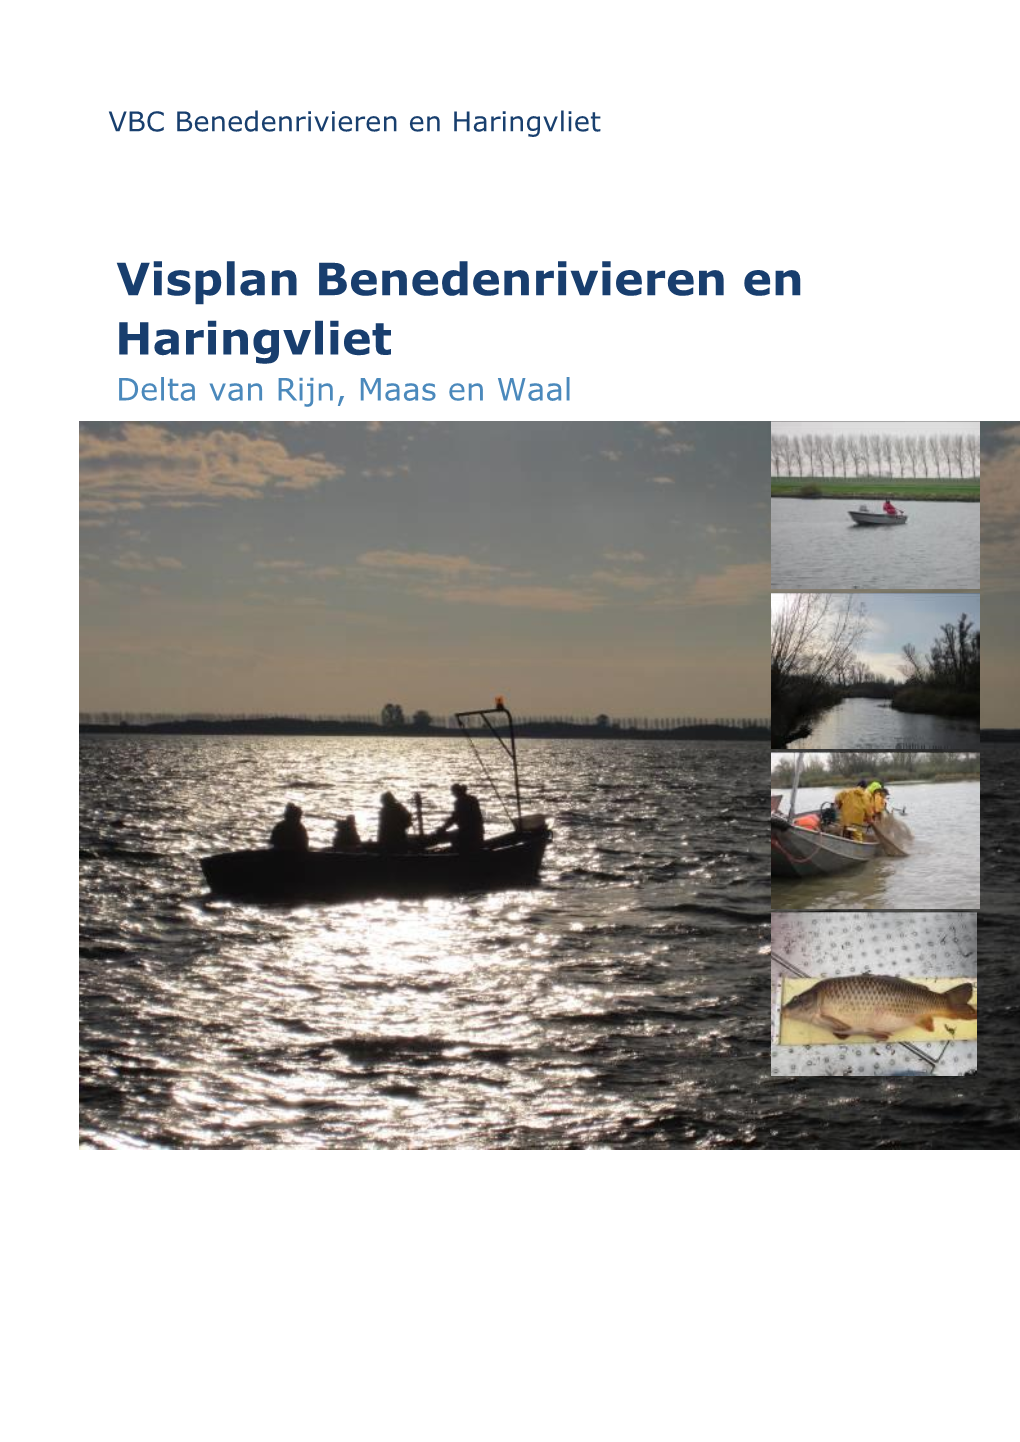 Visplan VBC Benedenrivieren En Haringvliet Heeft Een Aantal Doelstellingen Die Voortvloeien Uit Het Rijksbeleid